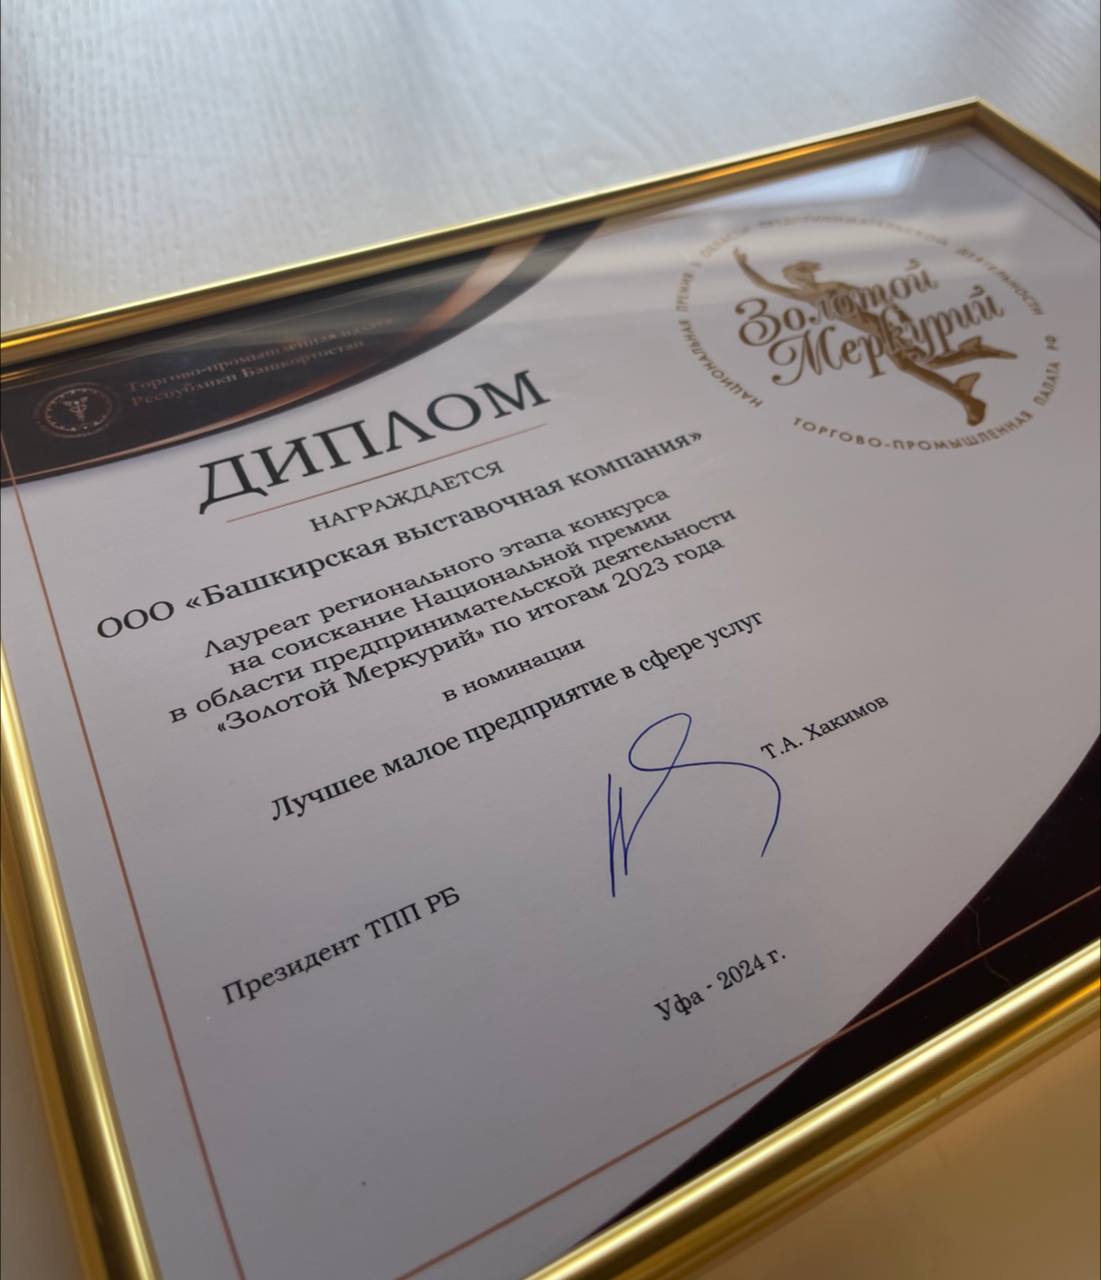 Башкирская выставочная компания стала лауреатом Национальной премии «Золотой Меркурий»